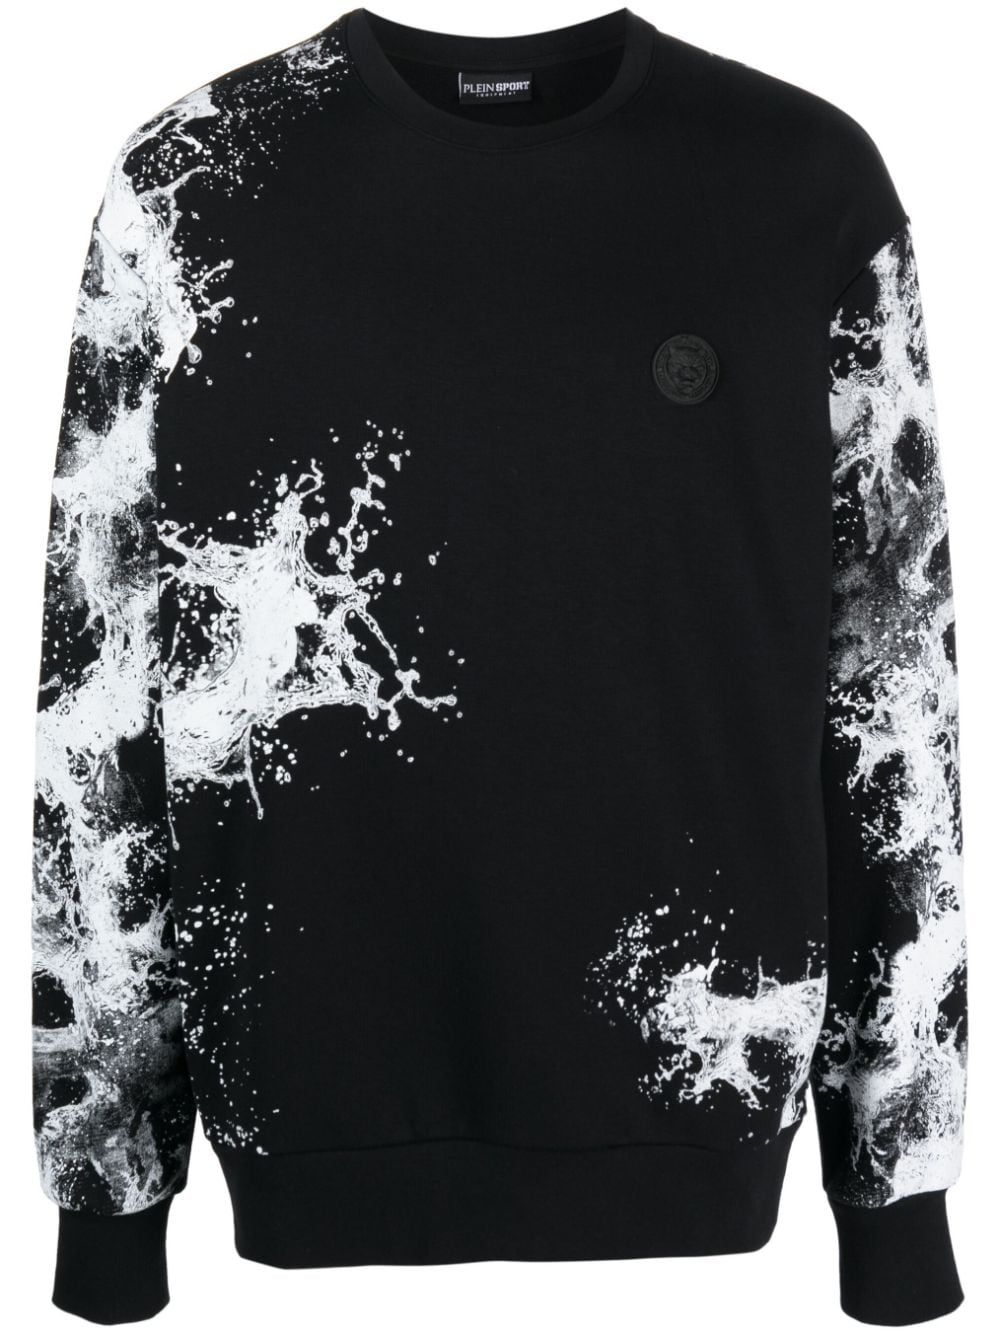 Plein Sport Splash Extreme cotton sweatshirt - Black von Plein Sport